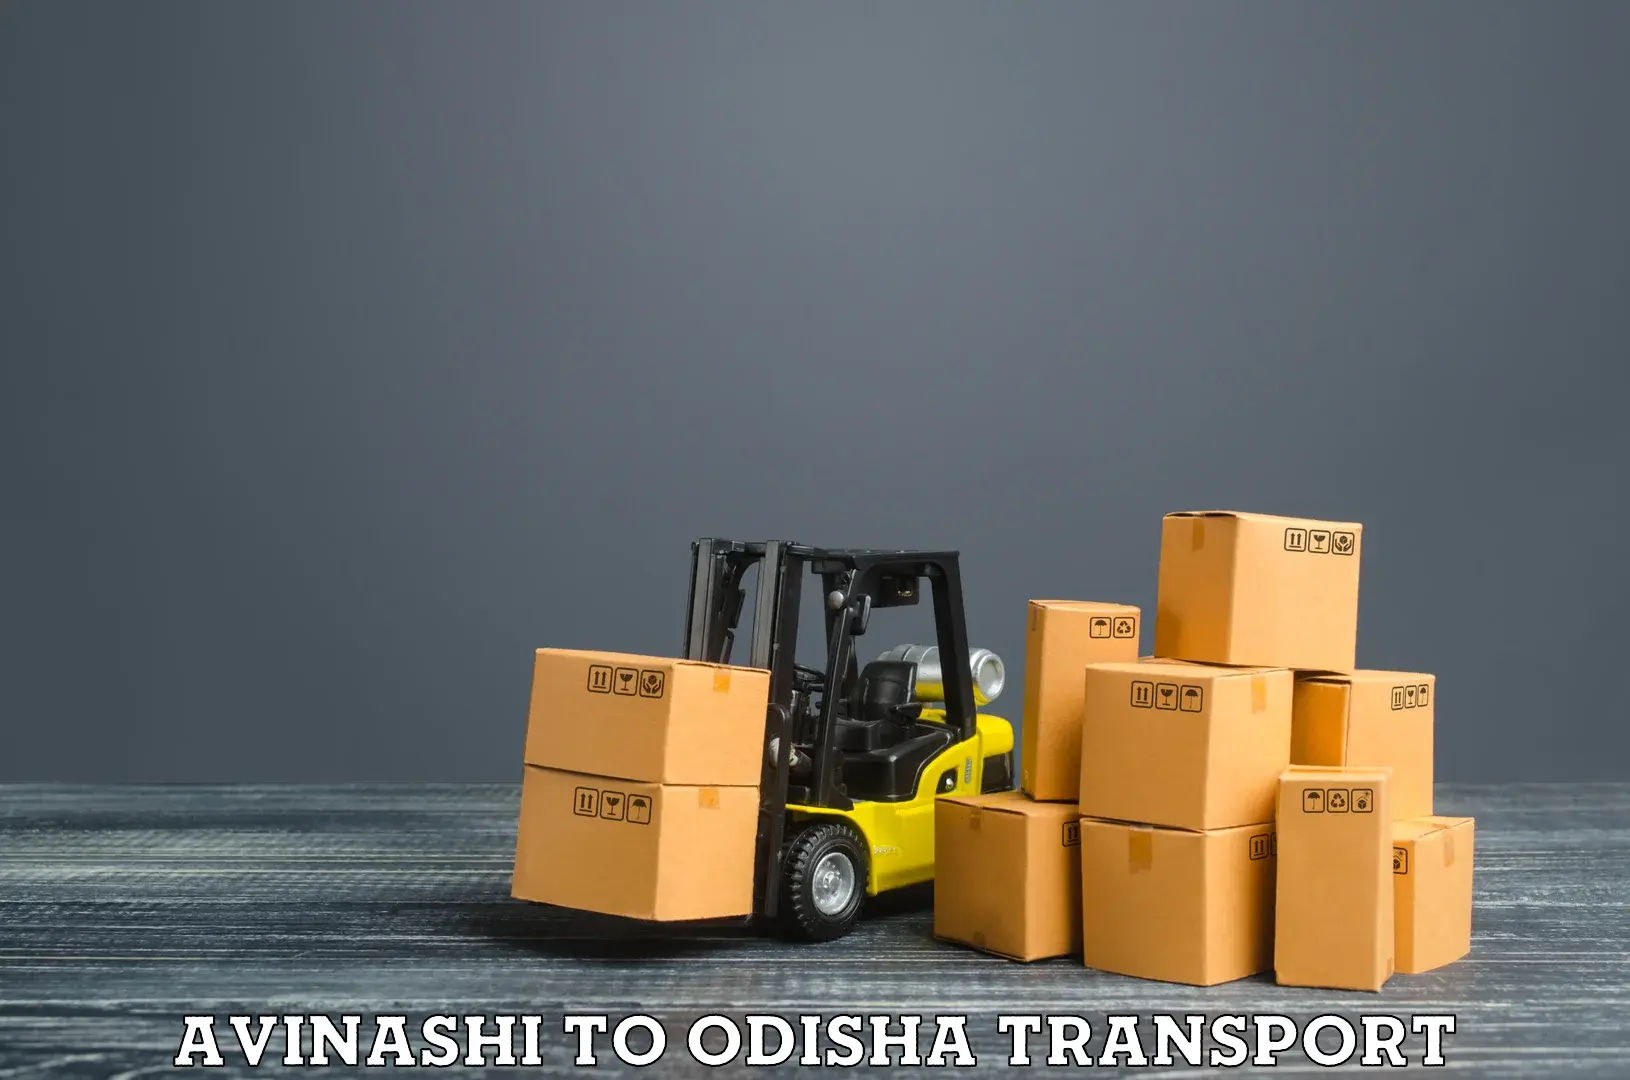 Luggage transport services Avinashi to Dandisahi